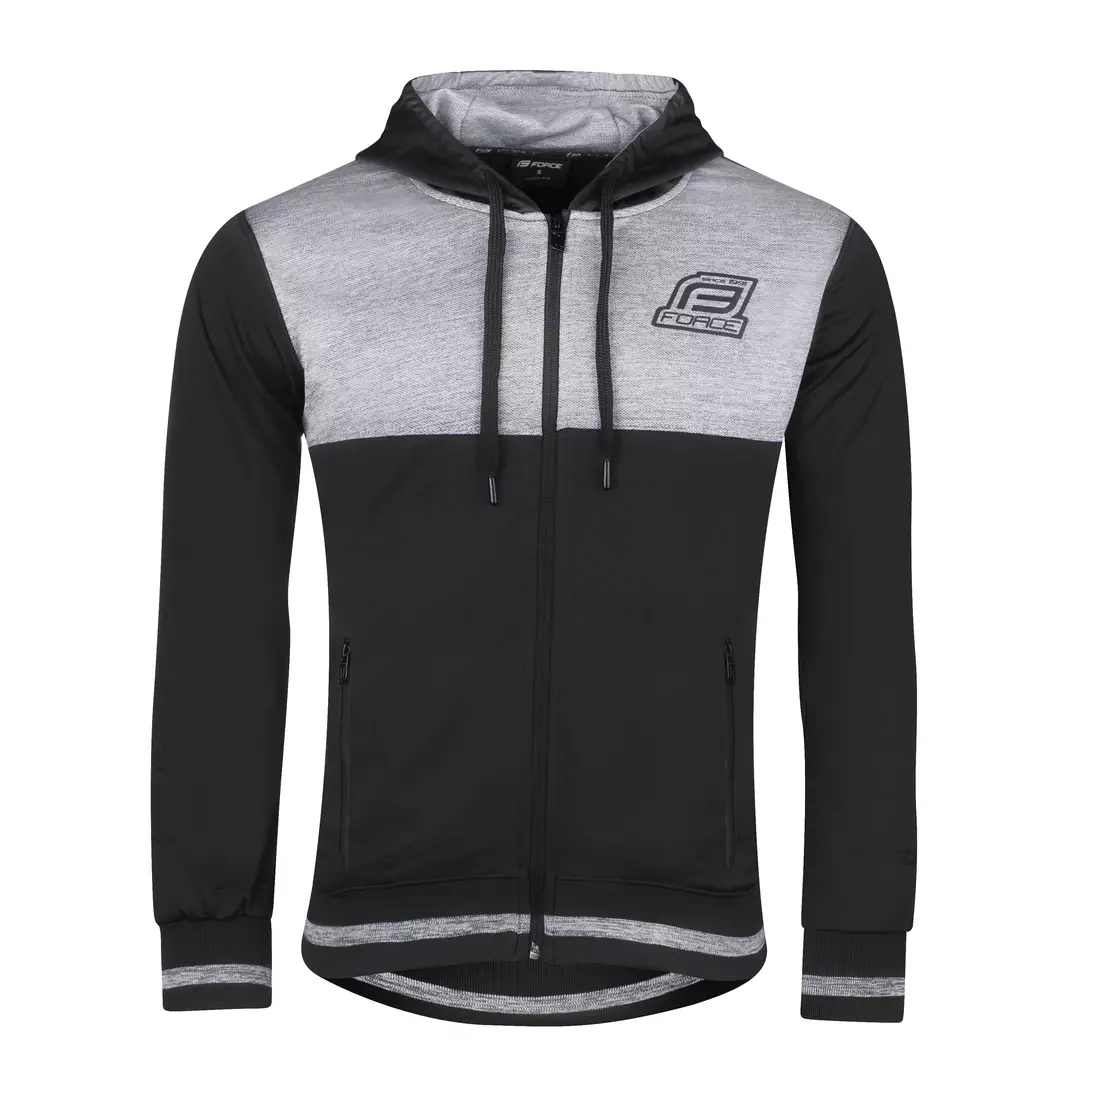 FORCE men's sports sweatshirt ROCKY black/grey 90811